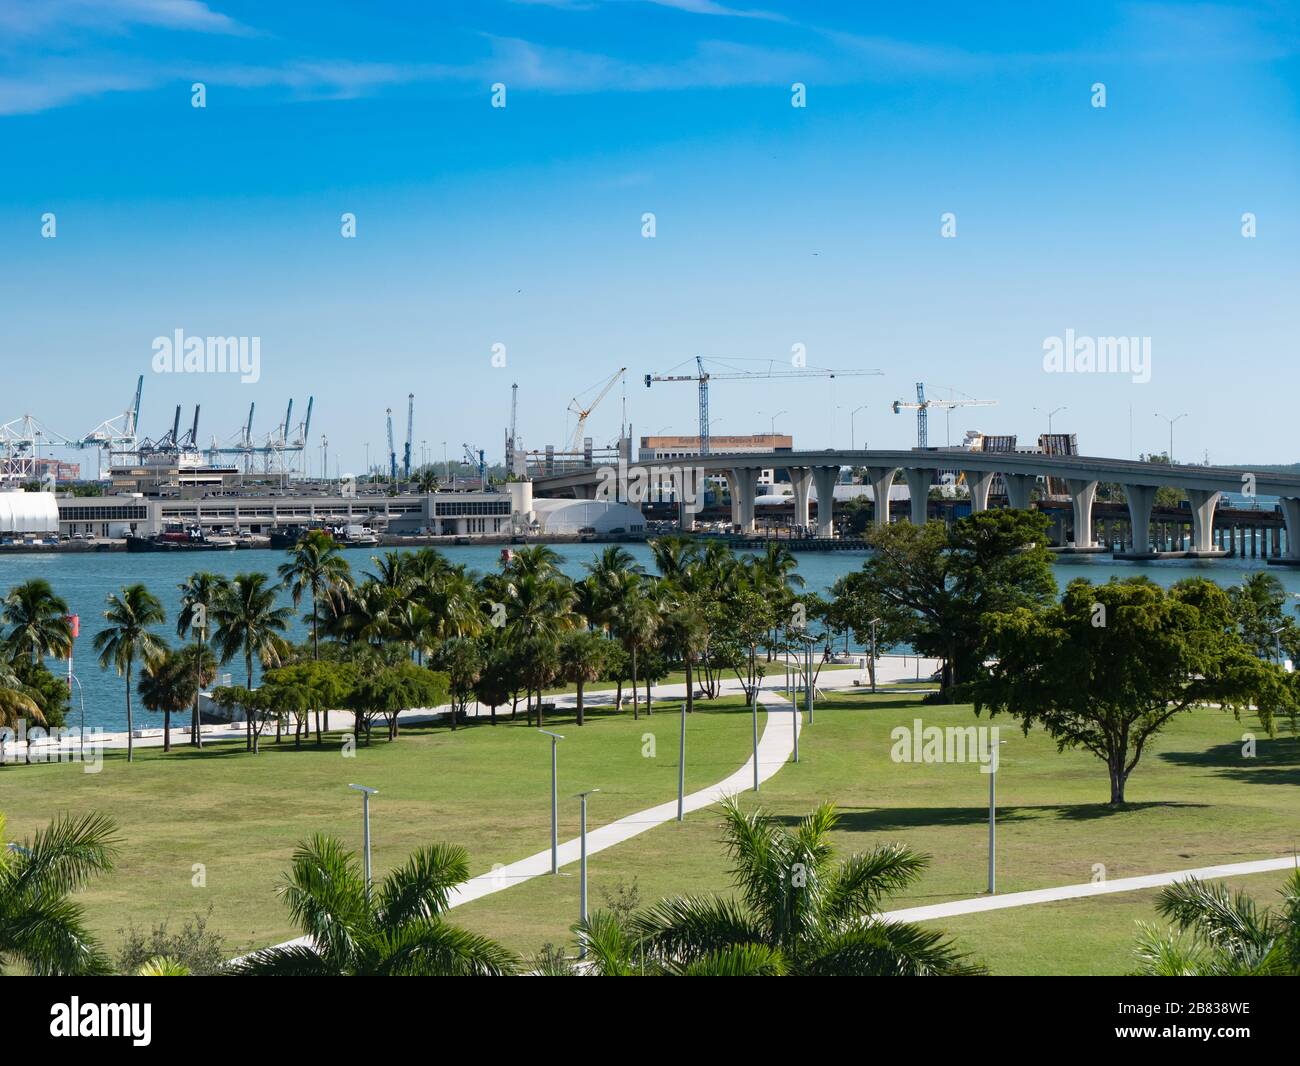 Port du parc aquatique Miami, pont franchissant et grues pour le chargement des navires Banque D'Images